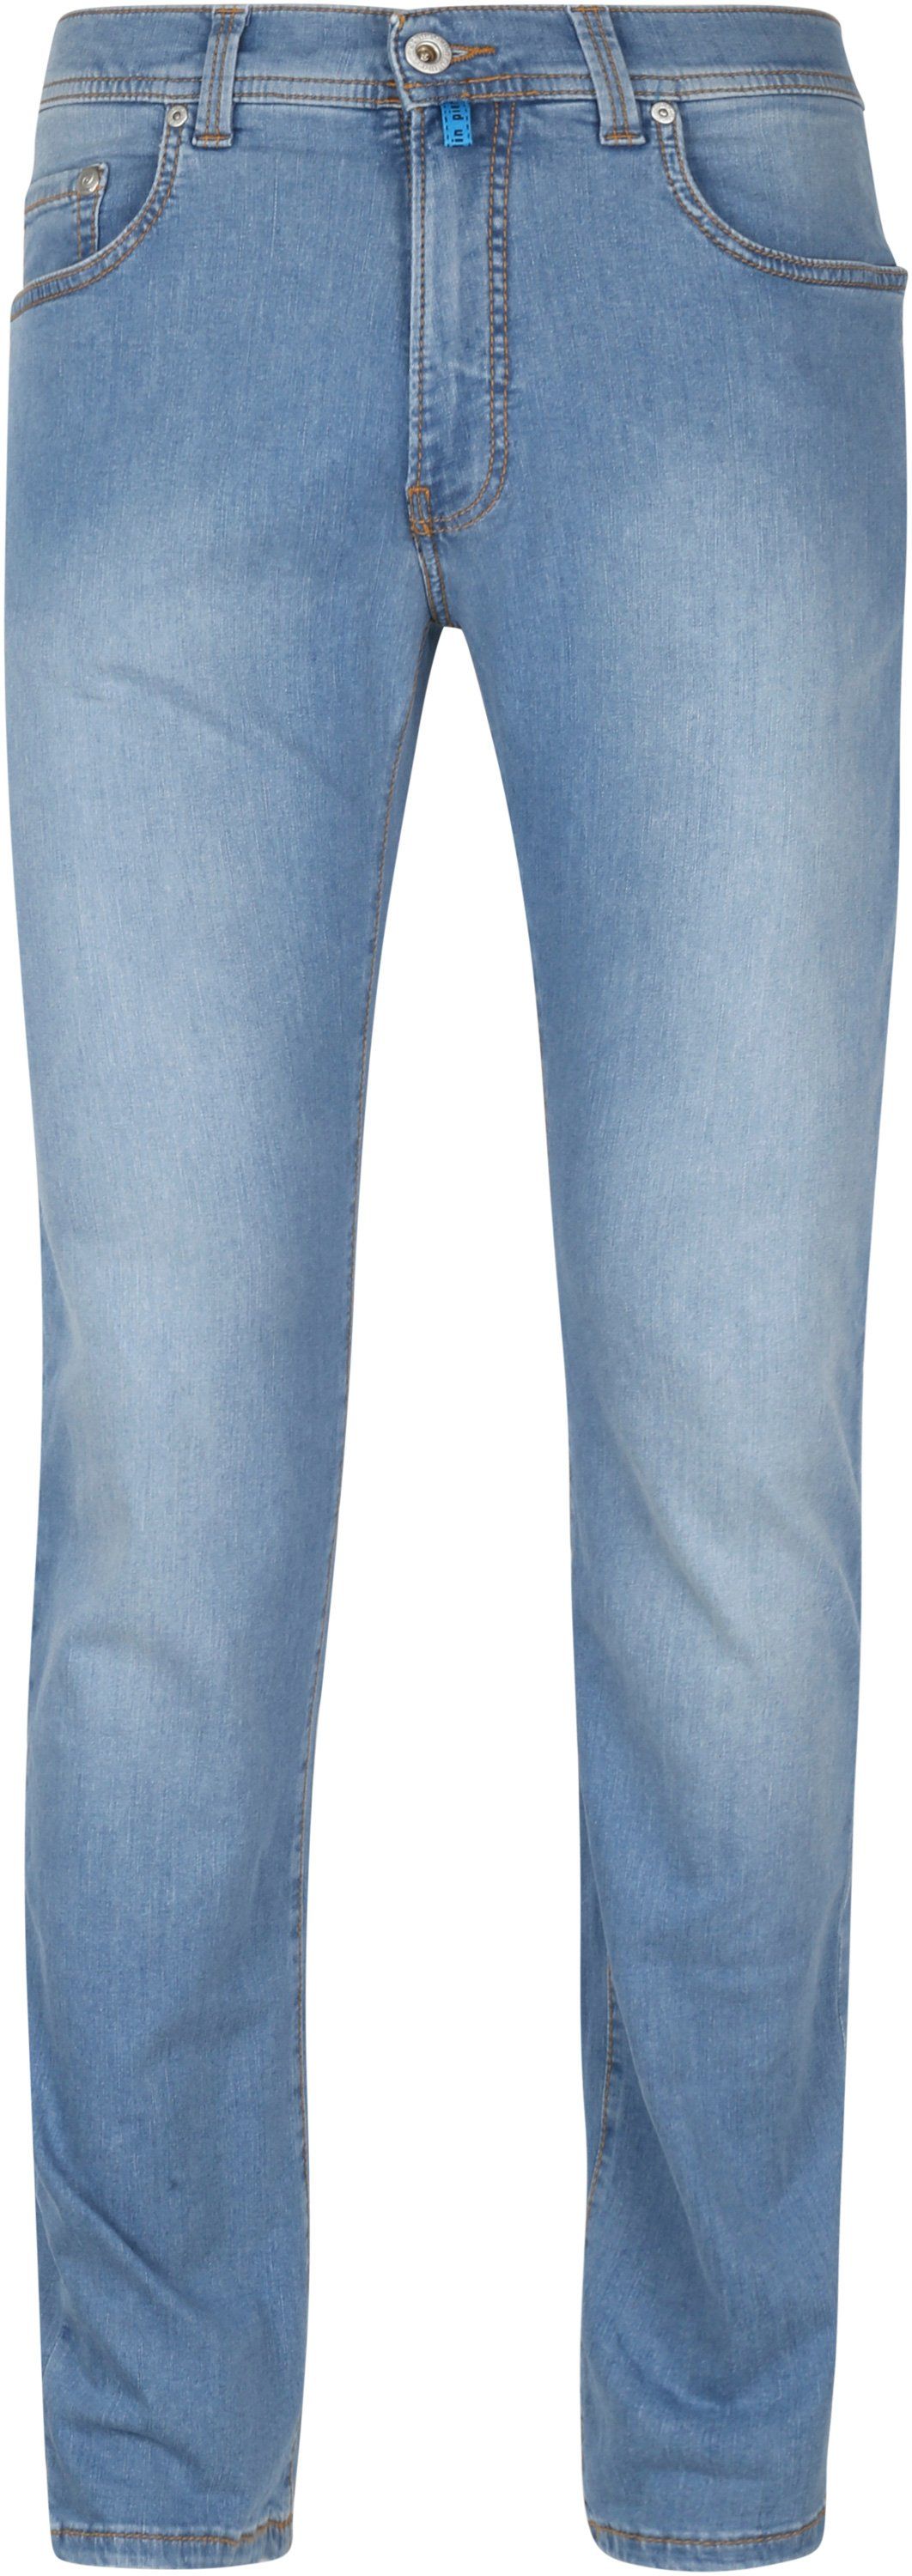 Pierre Cardin Jeans Lyon Tapered Future Flex Light Blue size W 31